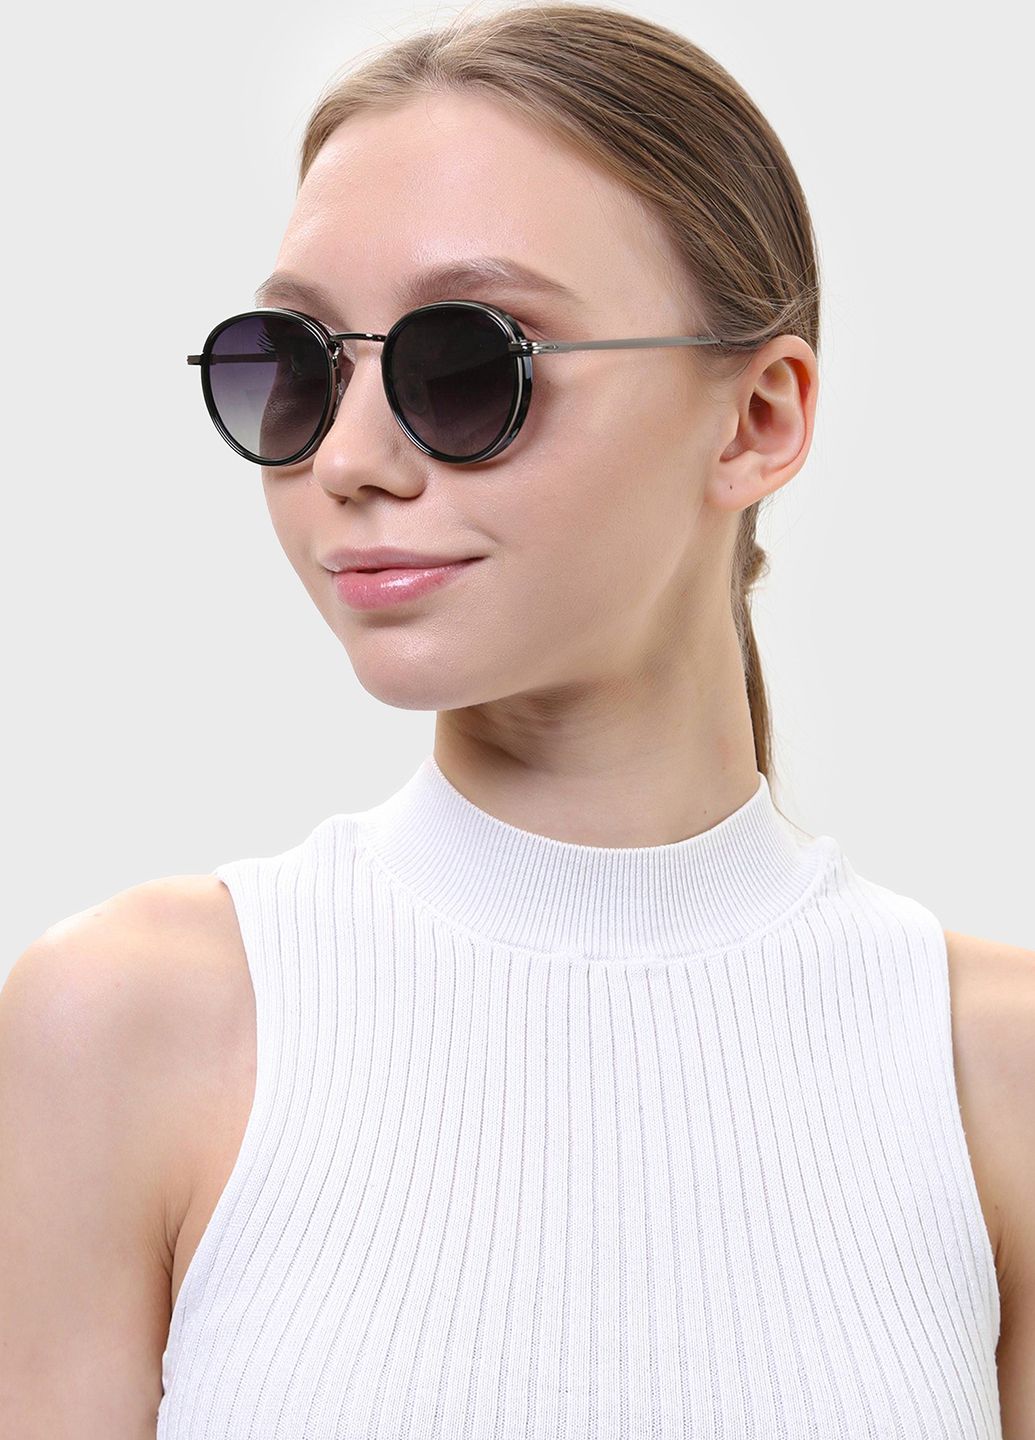 Купить Солнцезащитные очки c поляризацией HAVVS HV68042 170037 - Черный в интернет-магазине